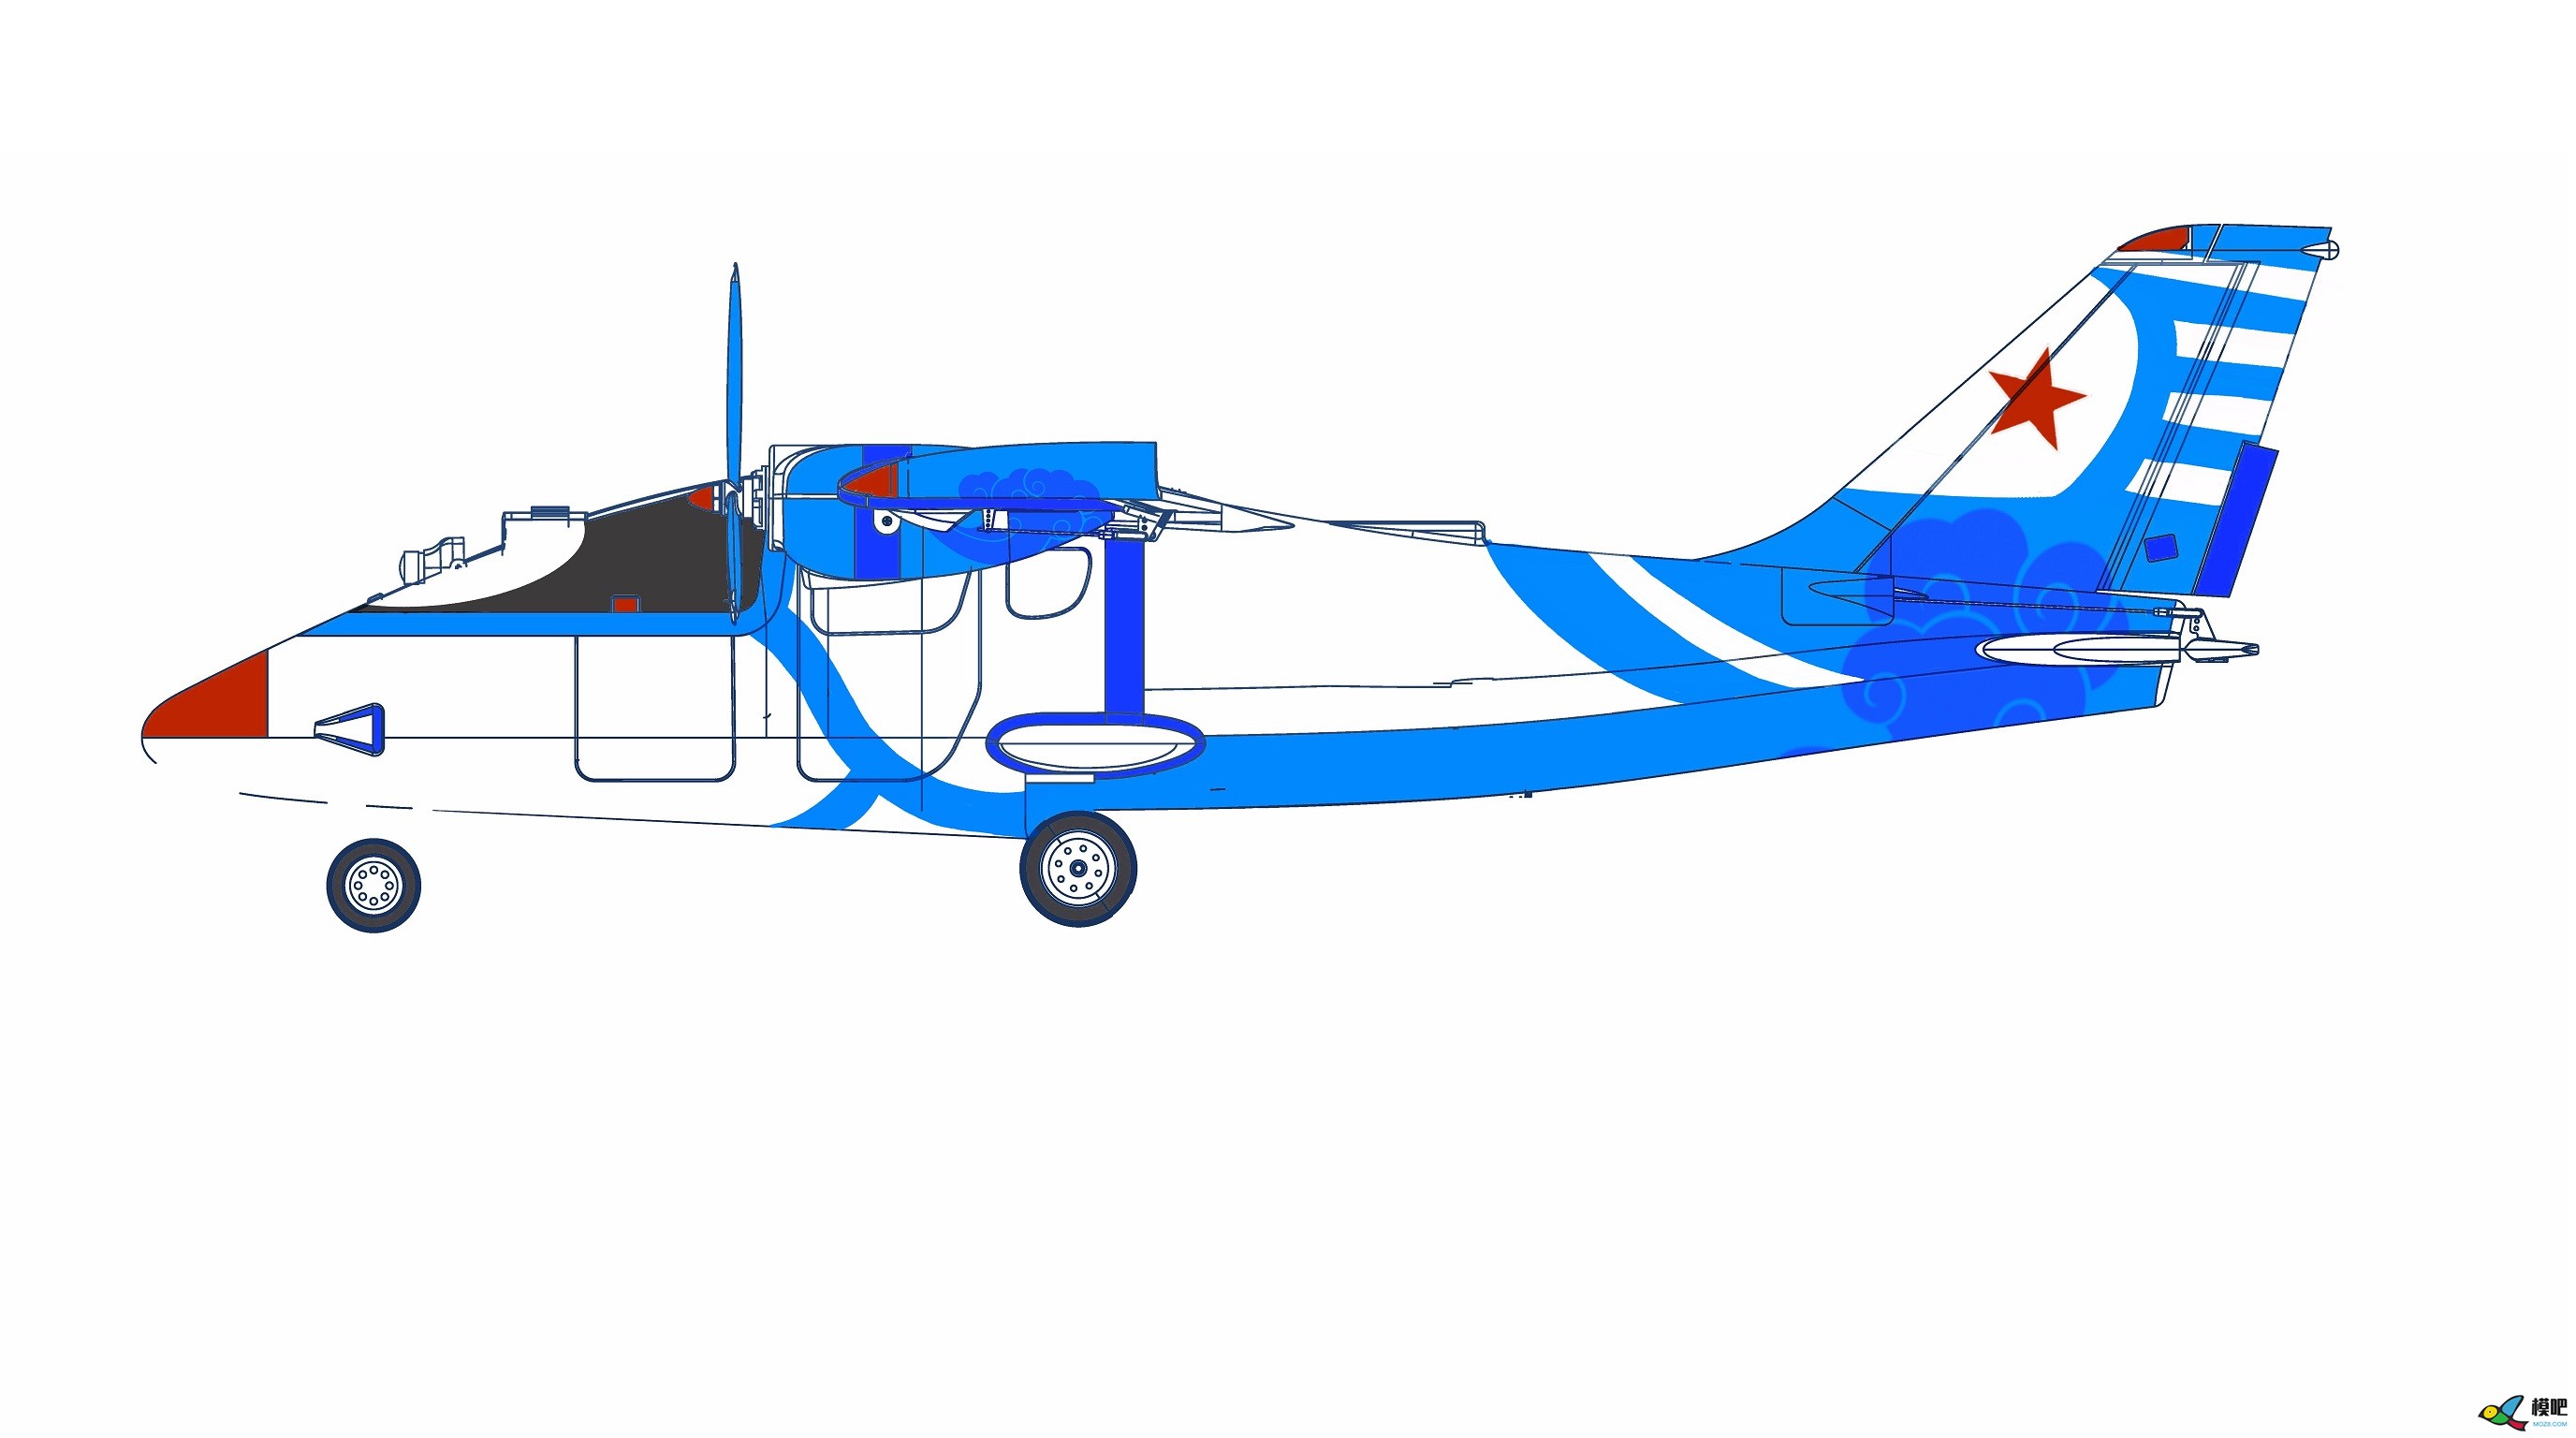 2020年第七期免费送模型：中航电Binary班纳瑞FPV飞机涂装大赛  作者:飞舞天水间 1131 